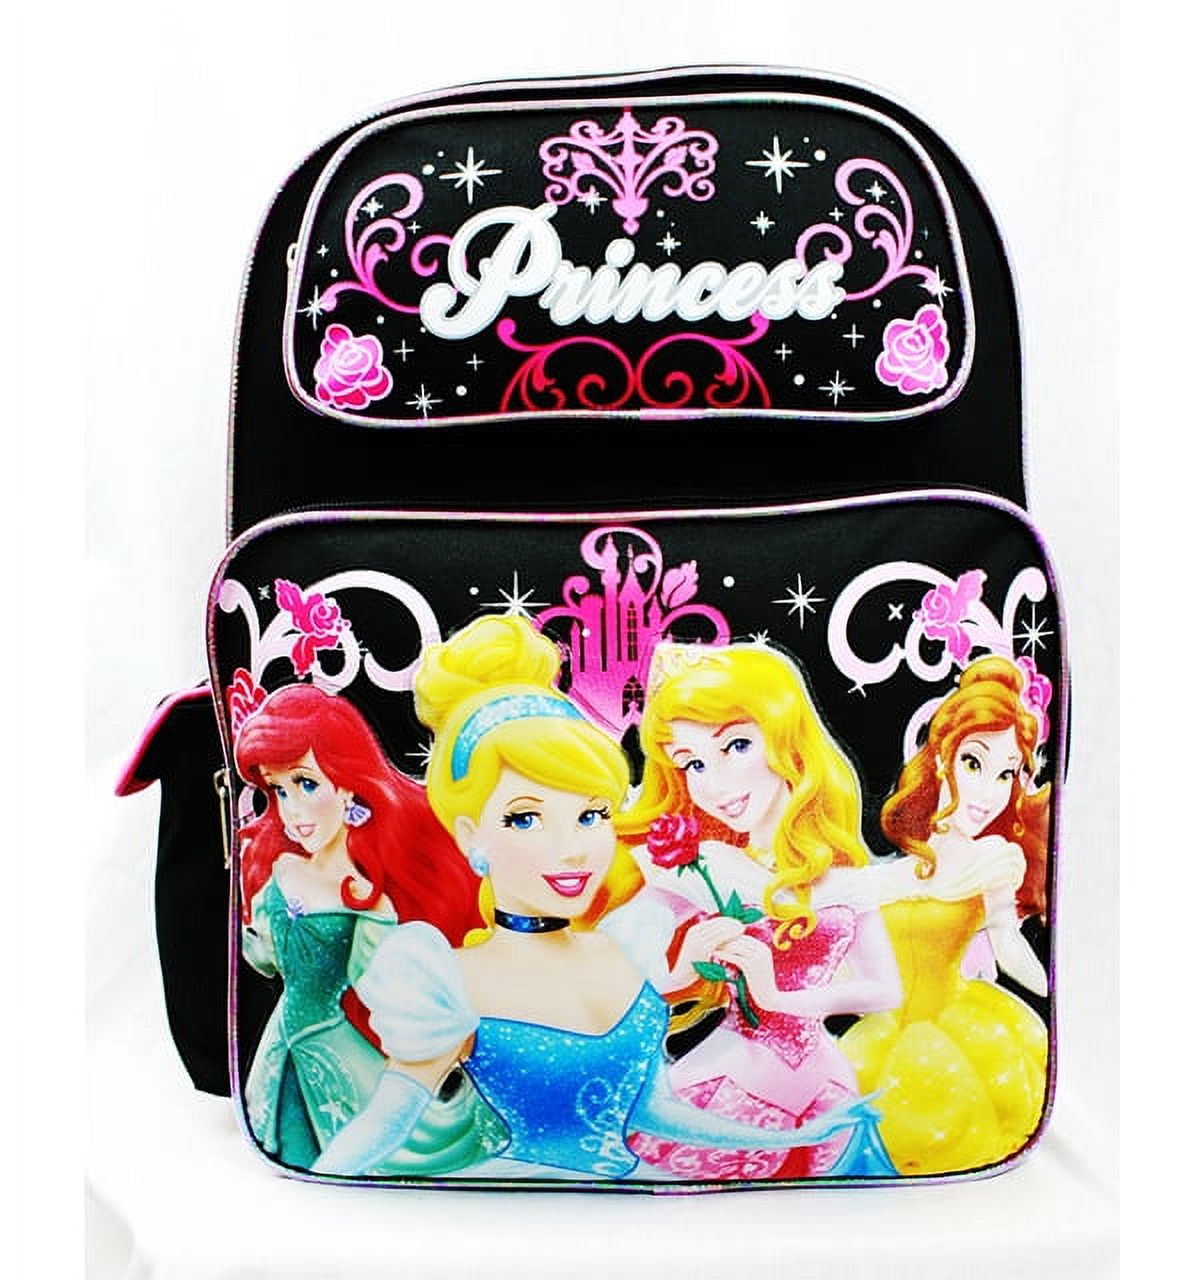 Backpack - - 4 Princess Rose Bag Black School Bag New A05932 - image 1 of 3